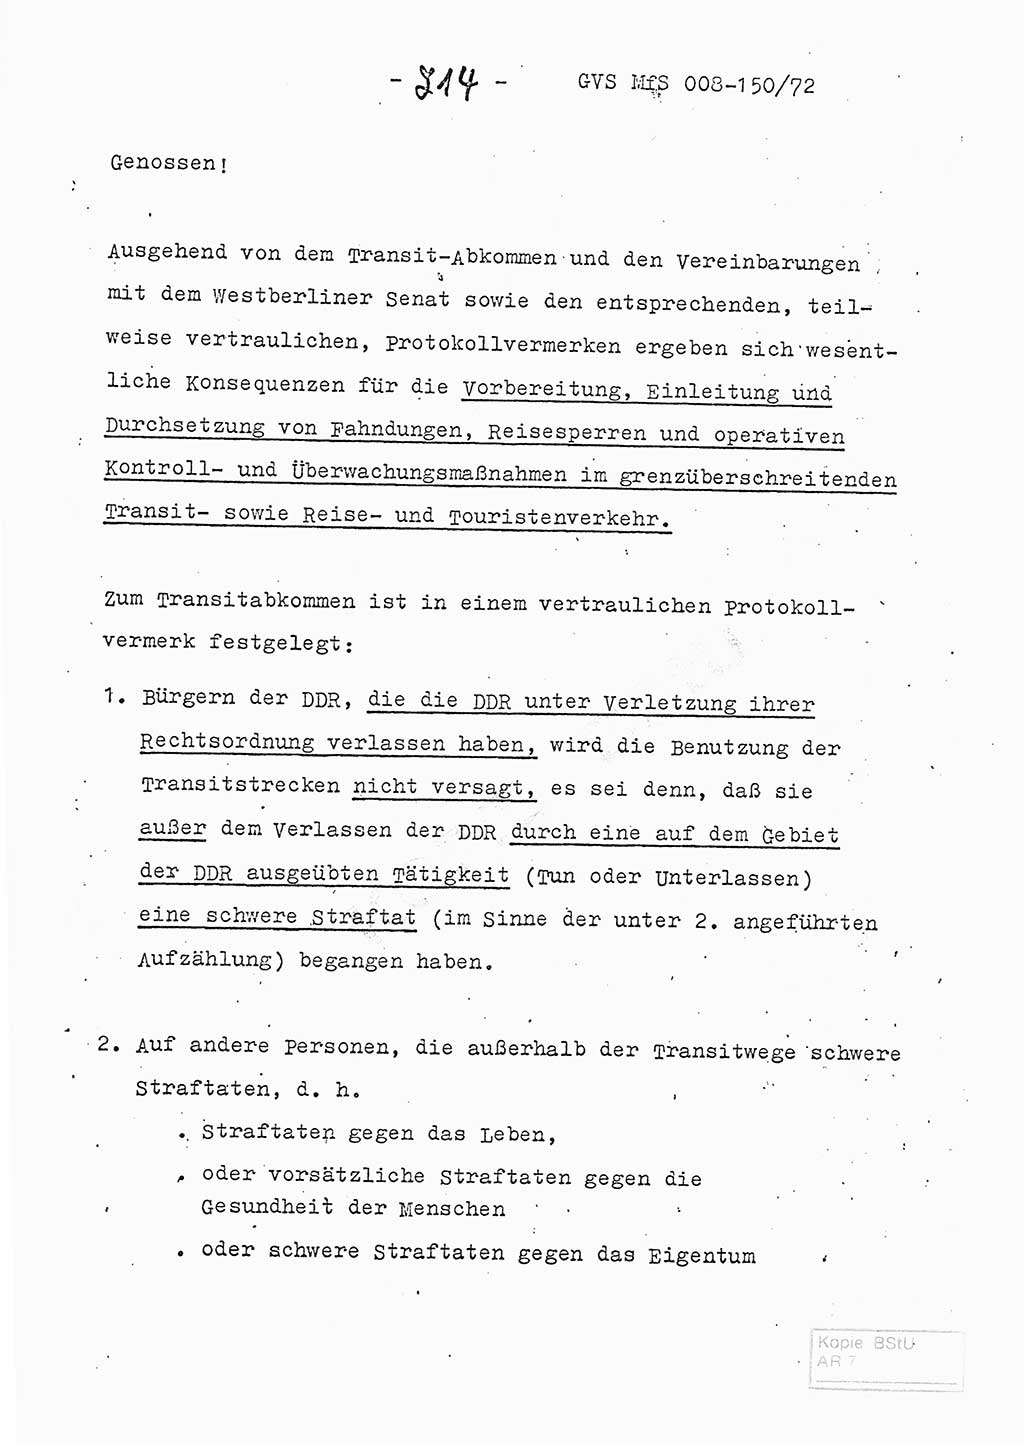 Referat (Entwurf) des Genossen Minister (Generaloberst Erich Mielke) auf der Dienstkonferenz 1972, Ministerium für Staatssicherheit (MfS) [Deutsche Demokratische Republik (DDR)], Der Minister, Geheime Verschlußsache (GVS) 008-150/72, Berlin 25.2.1972, Seite 214 (Ref. Entw. DK MfS DDR Min. GVS 008-150/72 1972, S. 214)